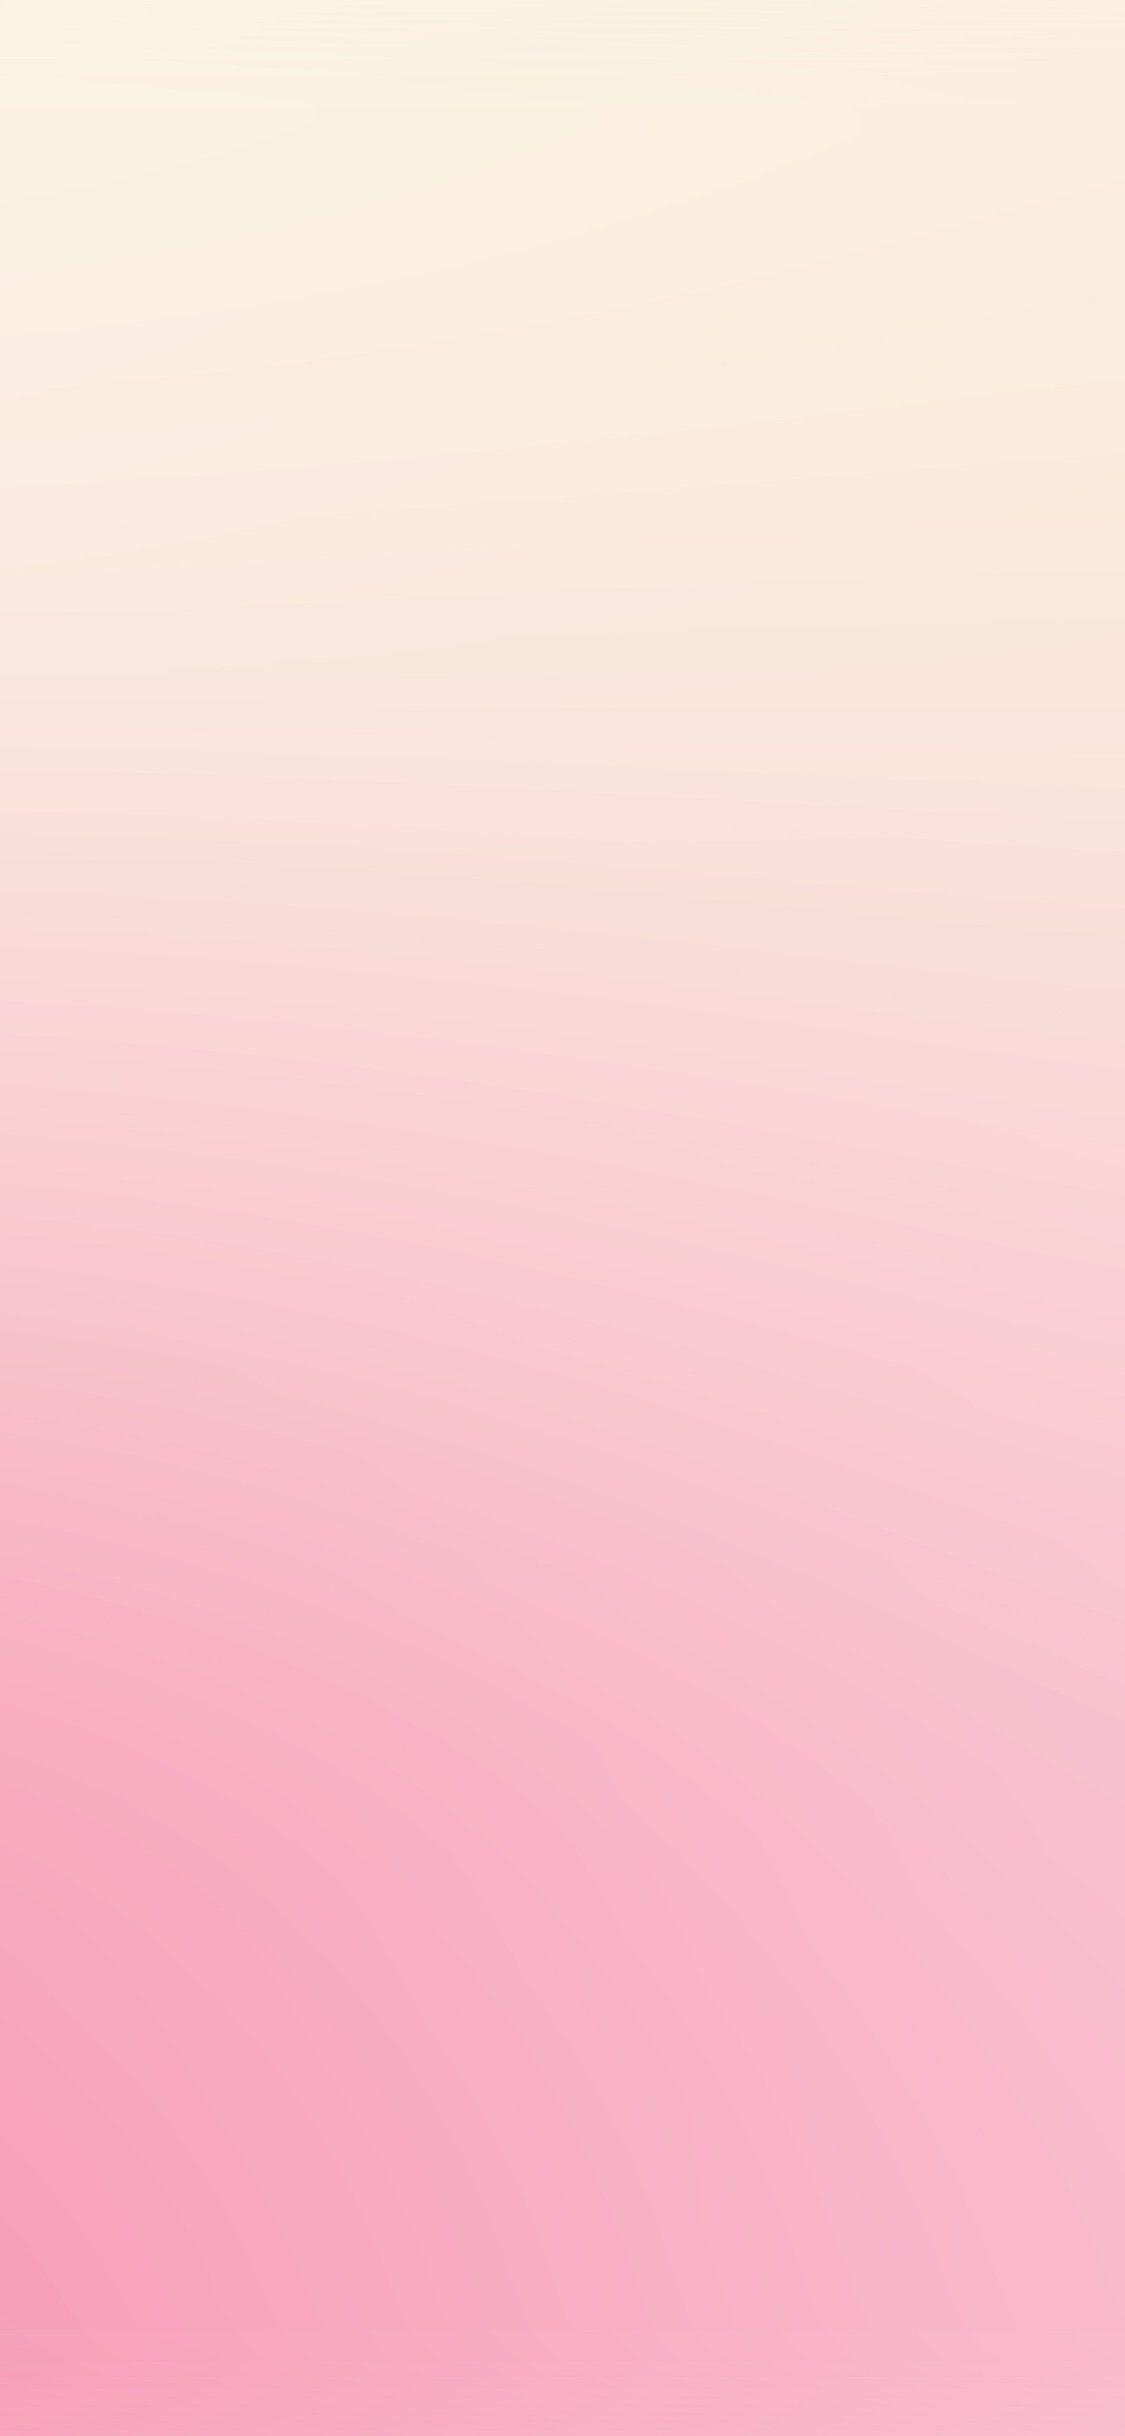 iPhone X wallpaper. cute pink blur gradation